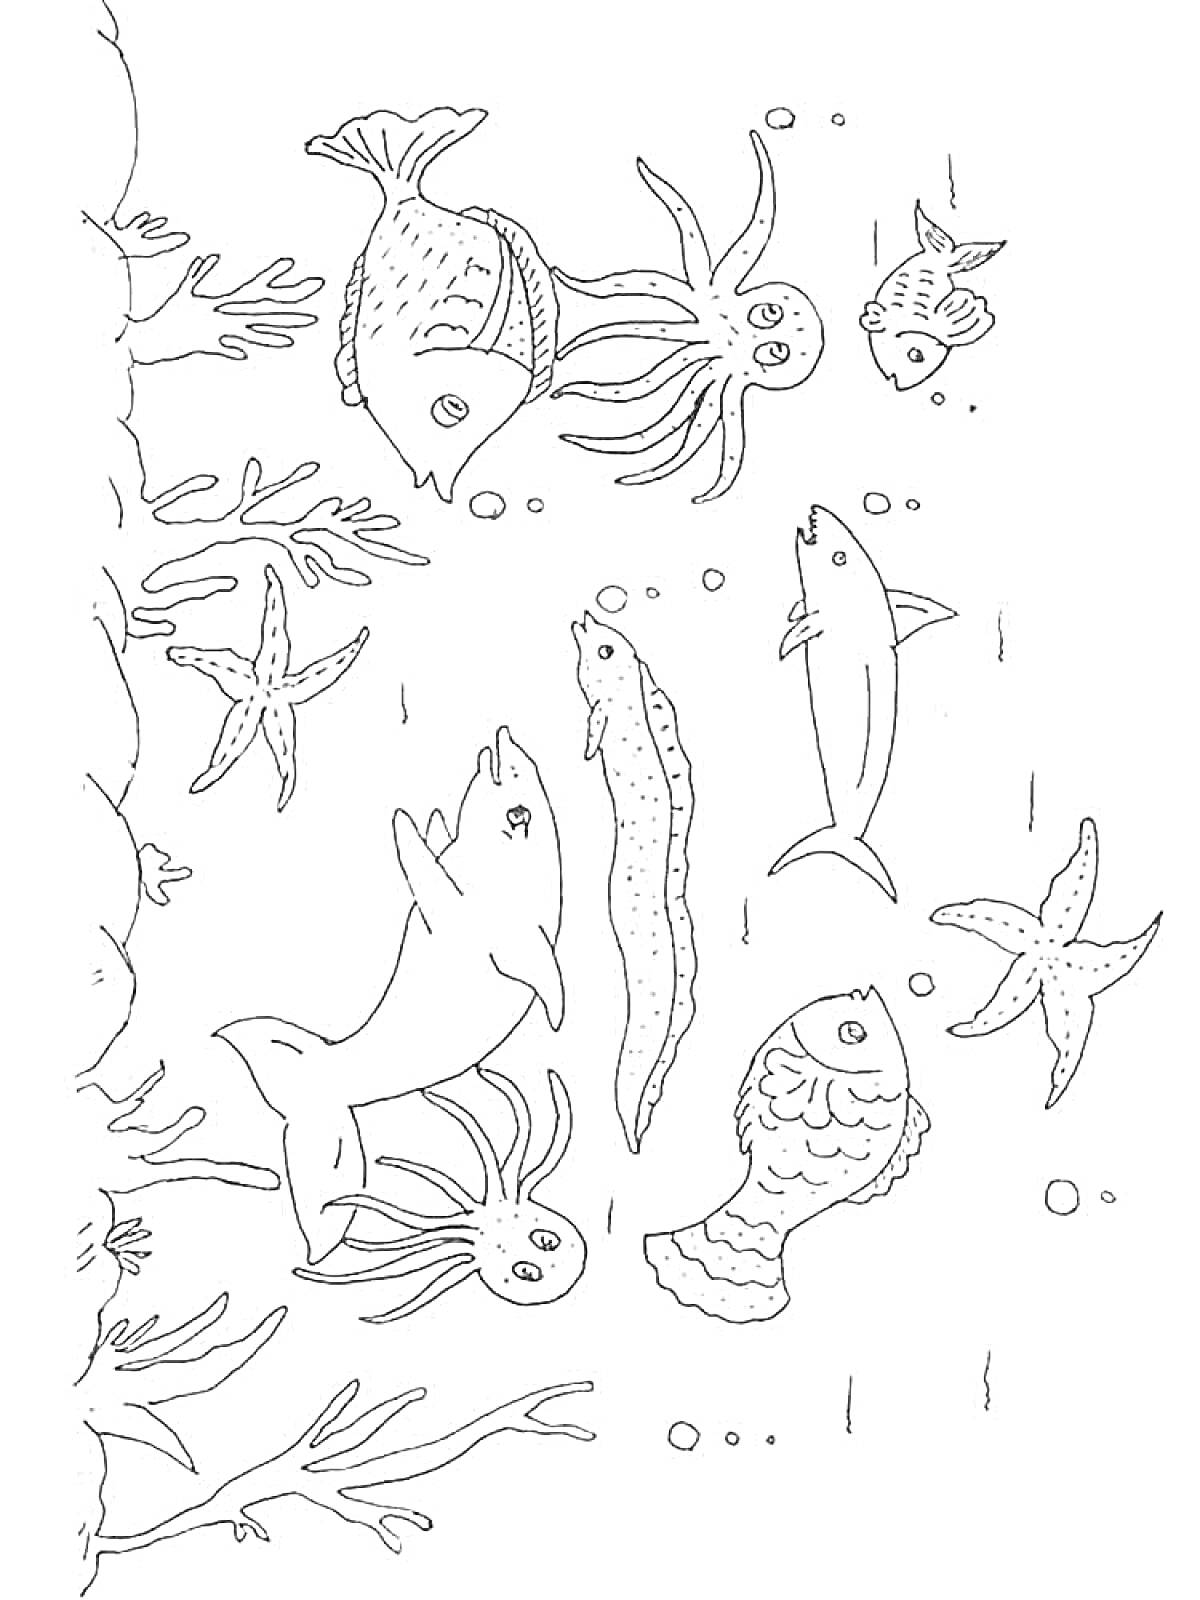 Раскраска морские обитатели, включающие рыб, осьминогов, морских звезд и кораллы